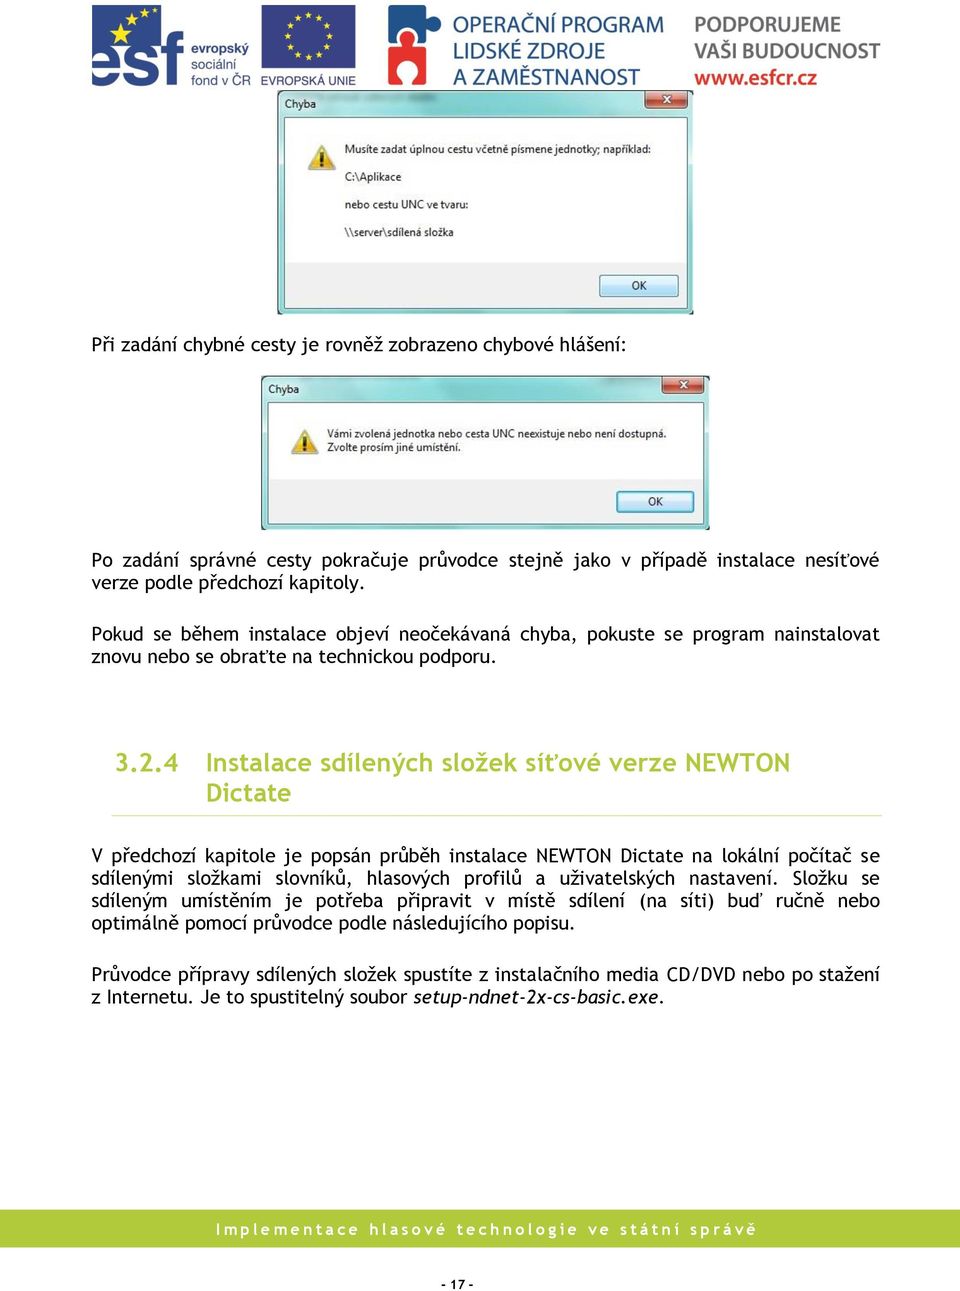 4 Instalace sdílených složek síťové verze NEWTON Dictate V předchozí kapitole je popsán průběh instalace NEWTON Dictate na lokální počítač se sdílenými složkami slovníků, hlasových profilů a